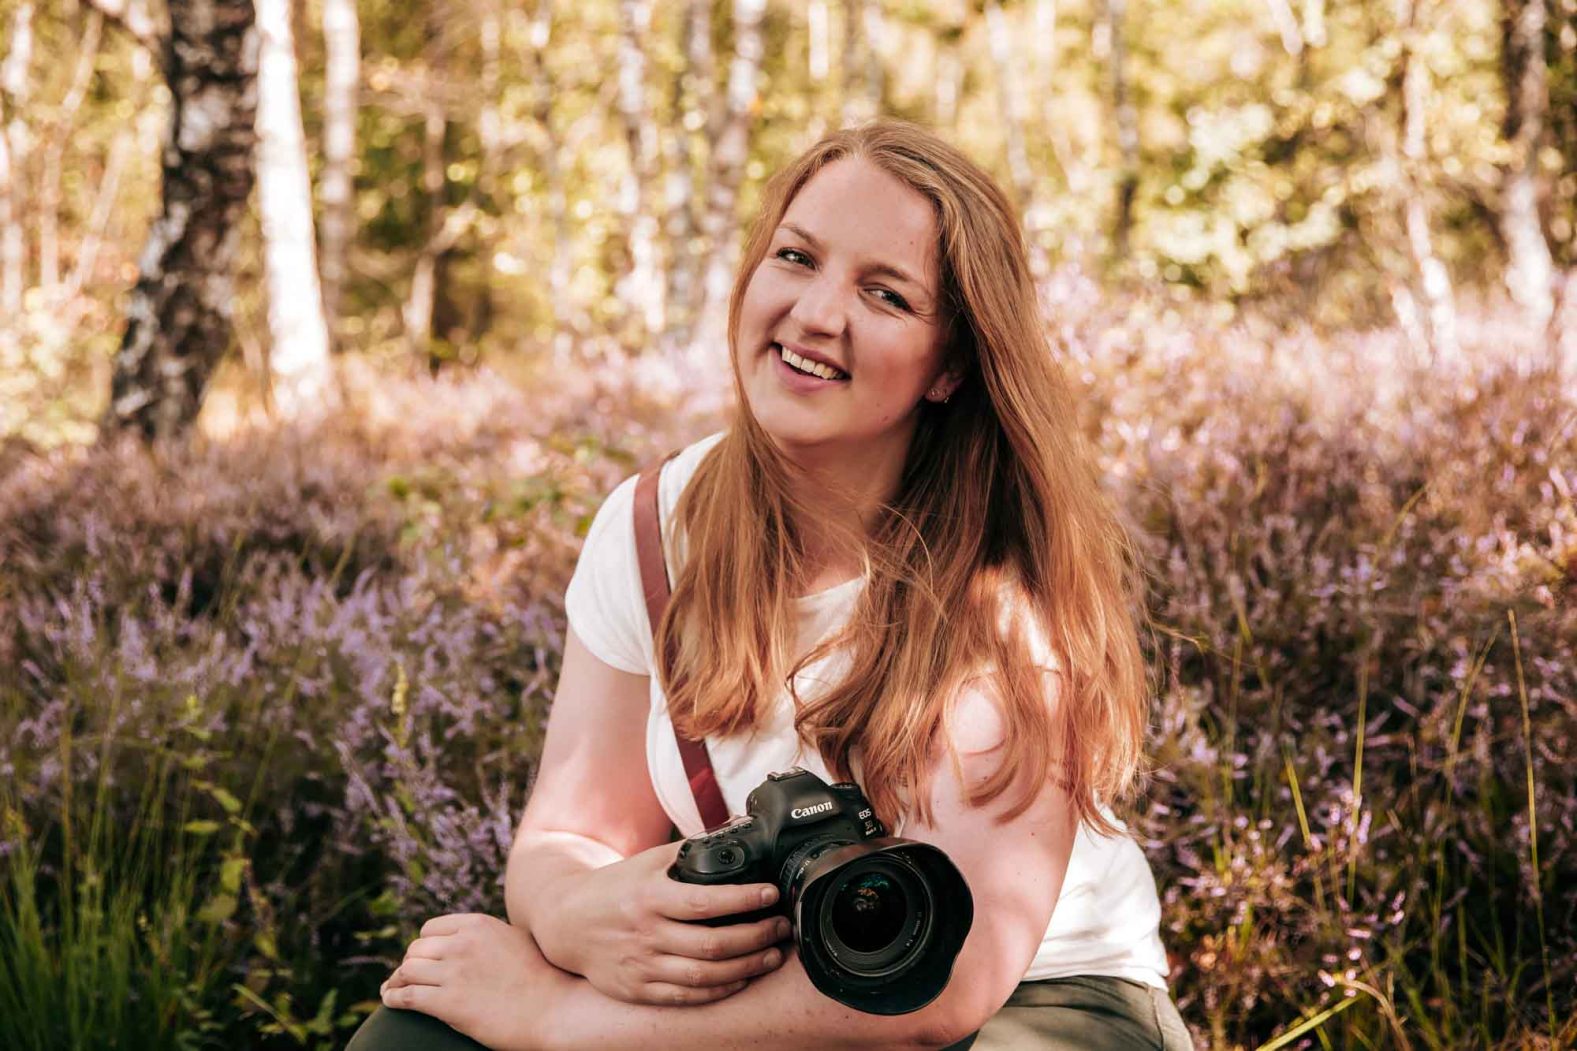 Fotograaf Angela Kiemeneij uit Oirschot. Je kunt bij haar terecht voor een spontane fotoshoot in de bossen met je familie of een complete bruiloftreportage.